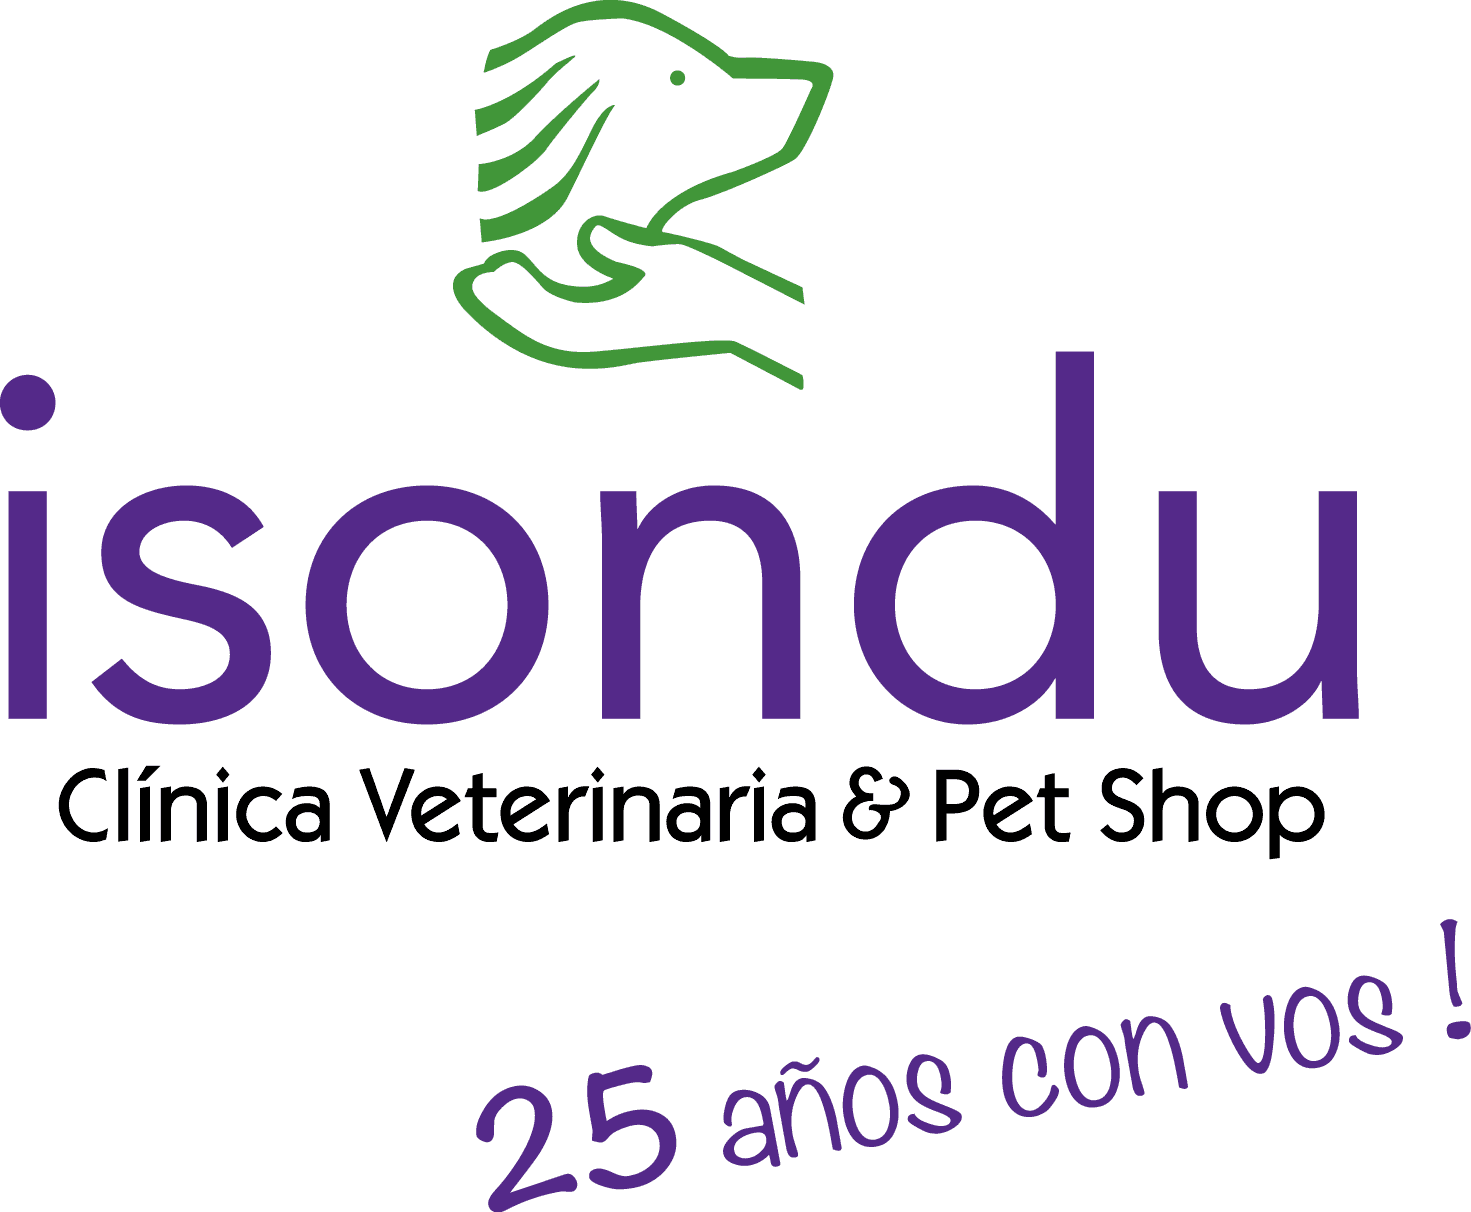 ¿Existen plantas tóxicas para nuestras mascotas? by Isondú 